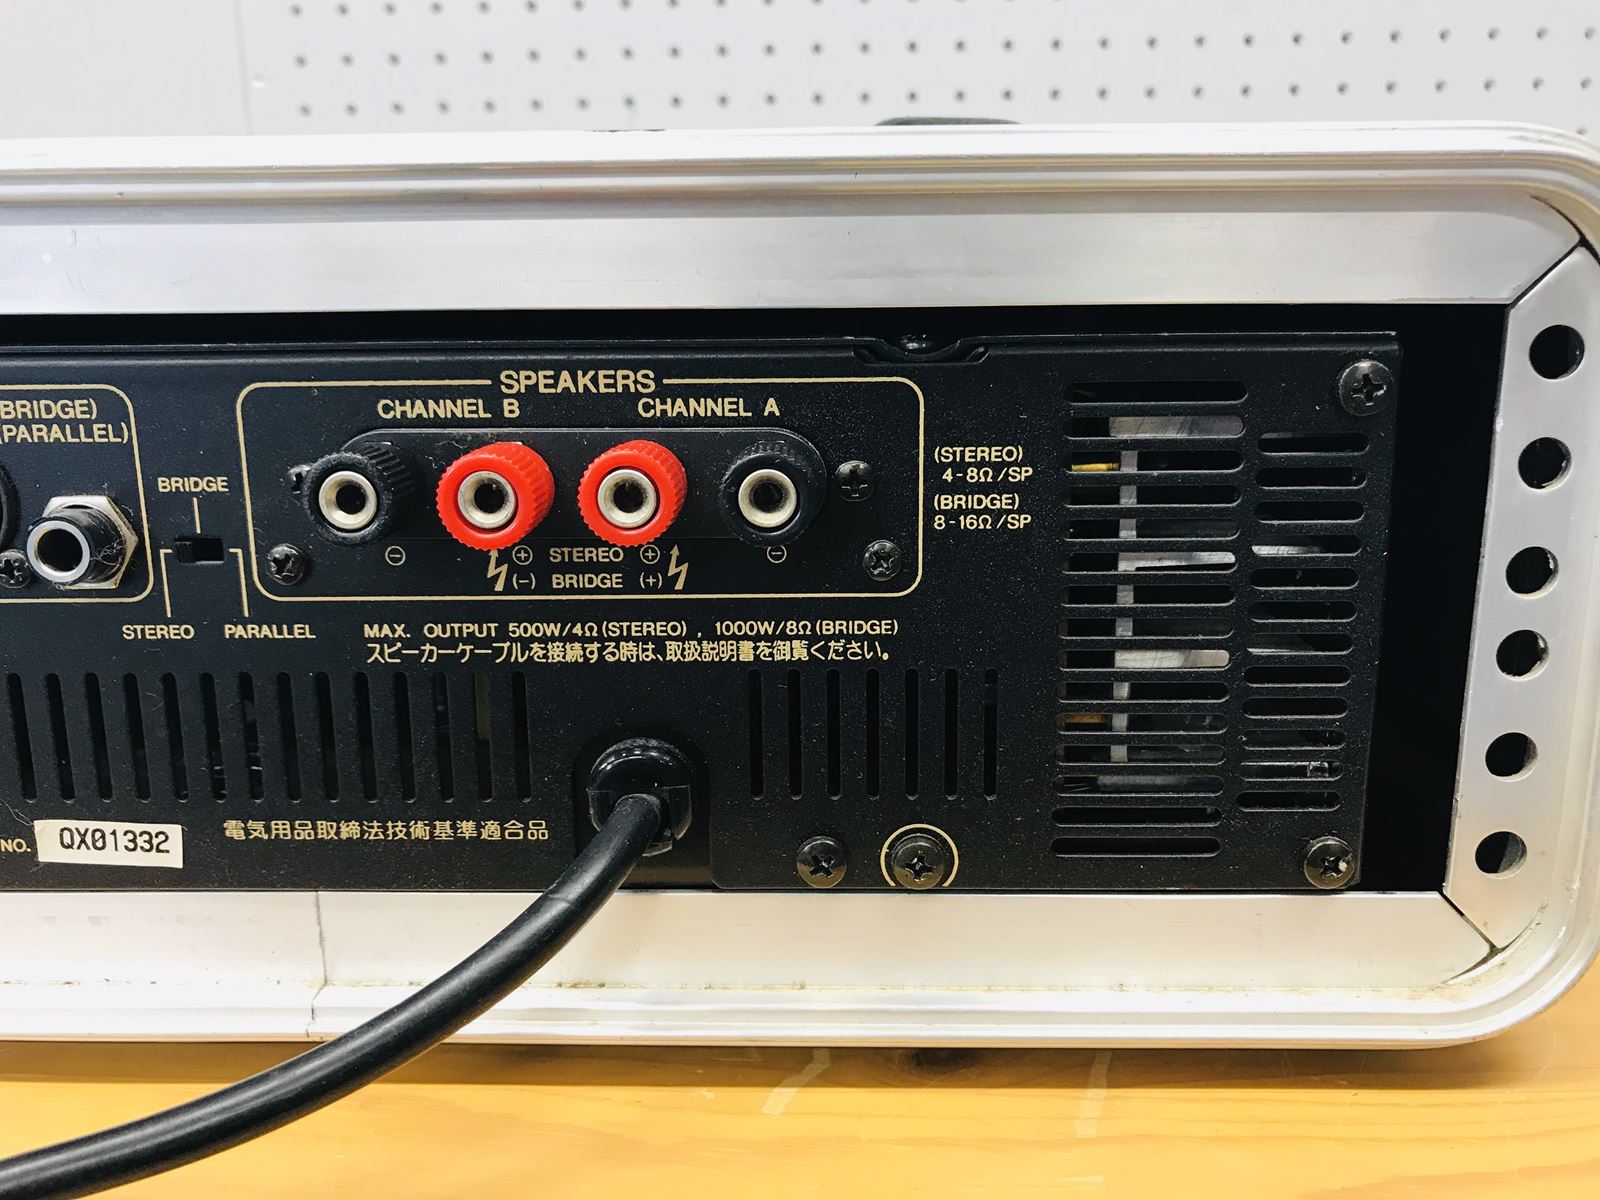 ヤマハ P3200 業務用パワーアンプ | SwingAudio Shop